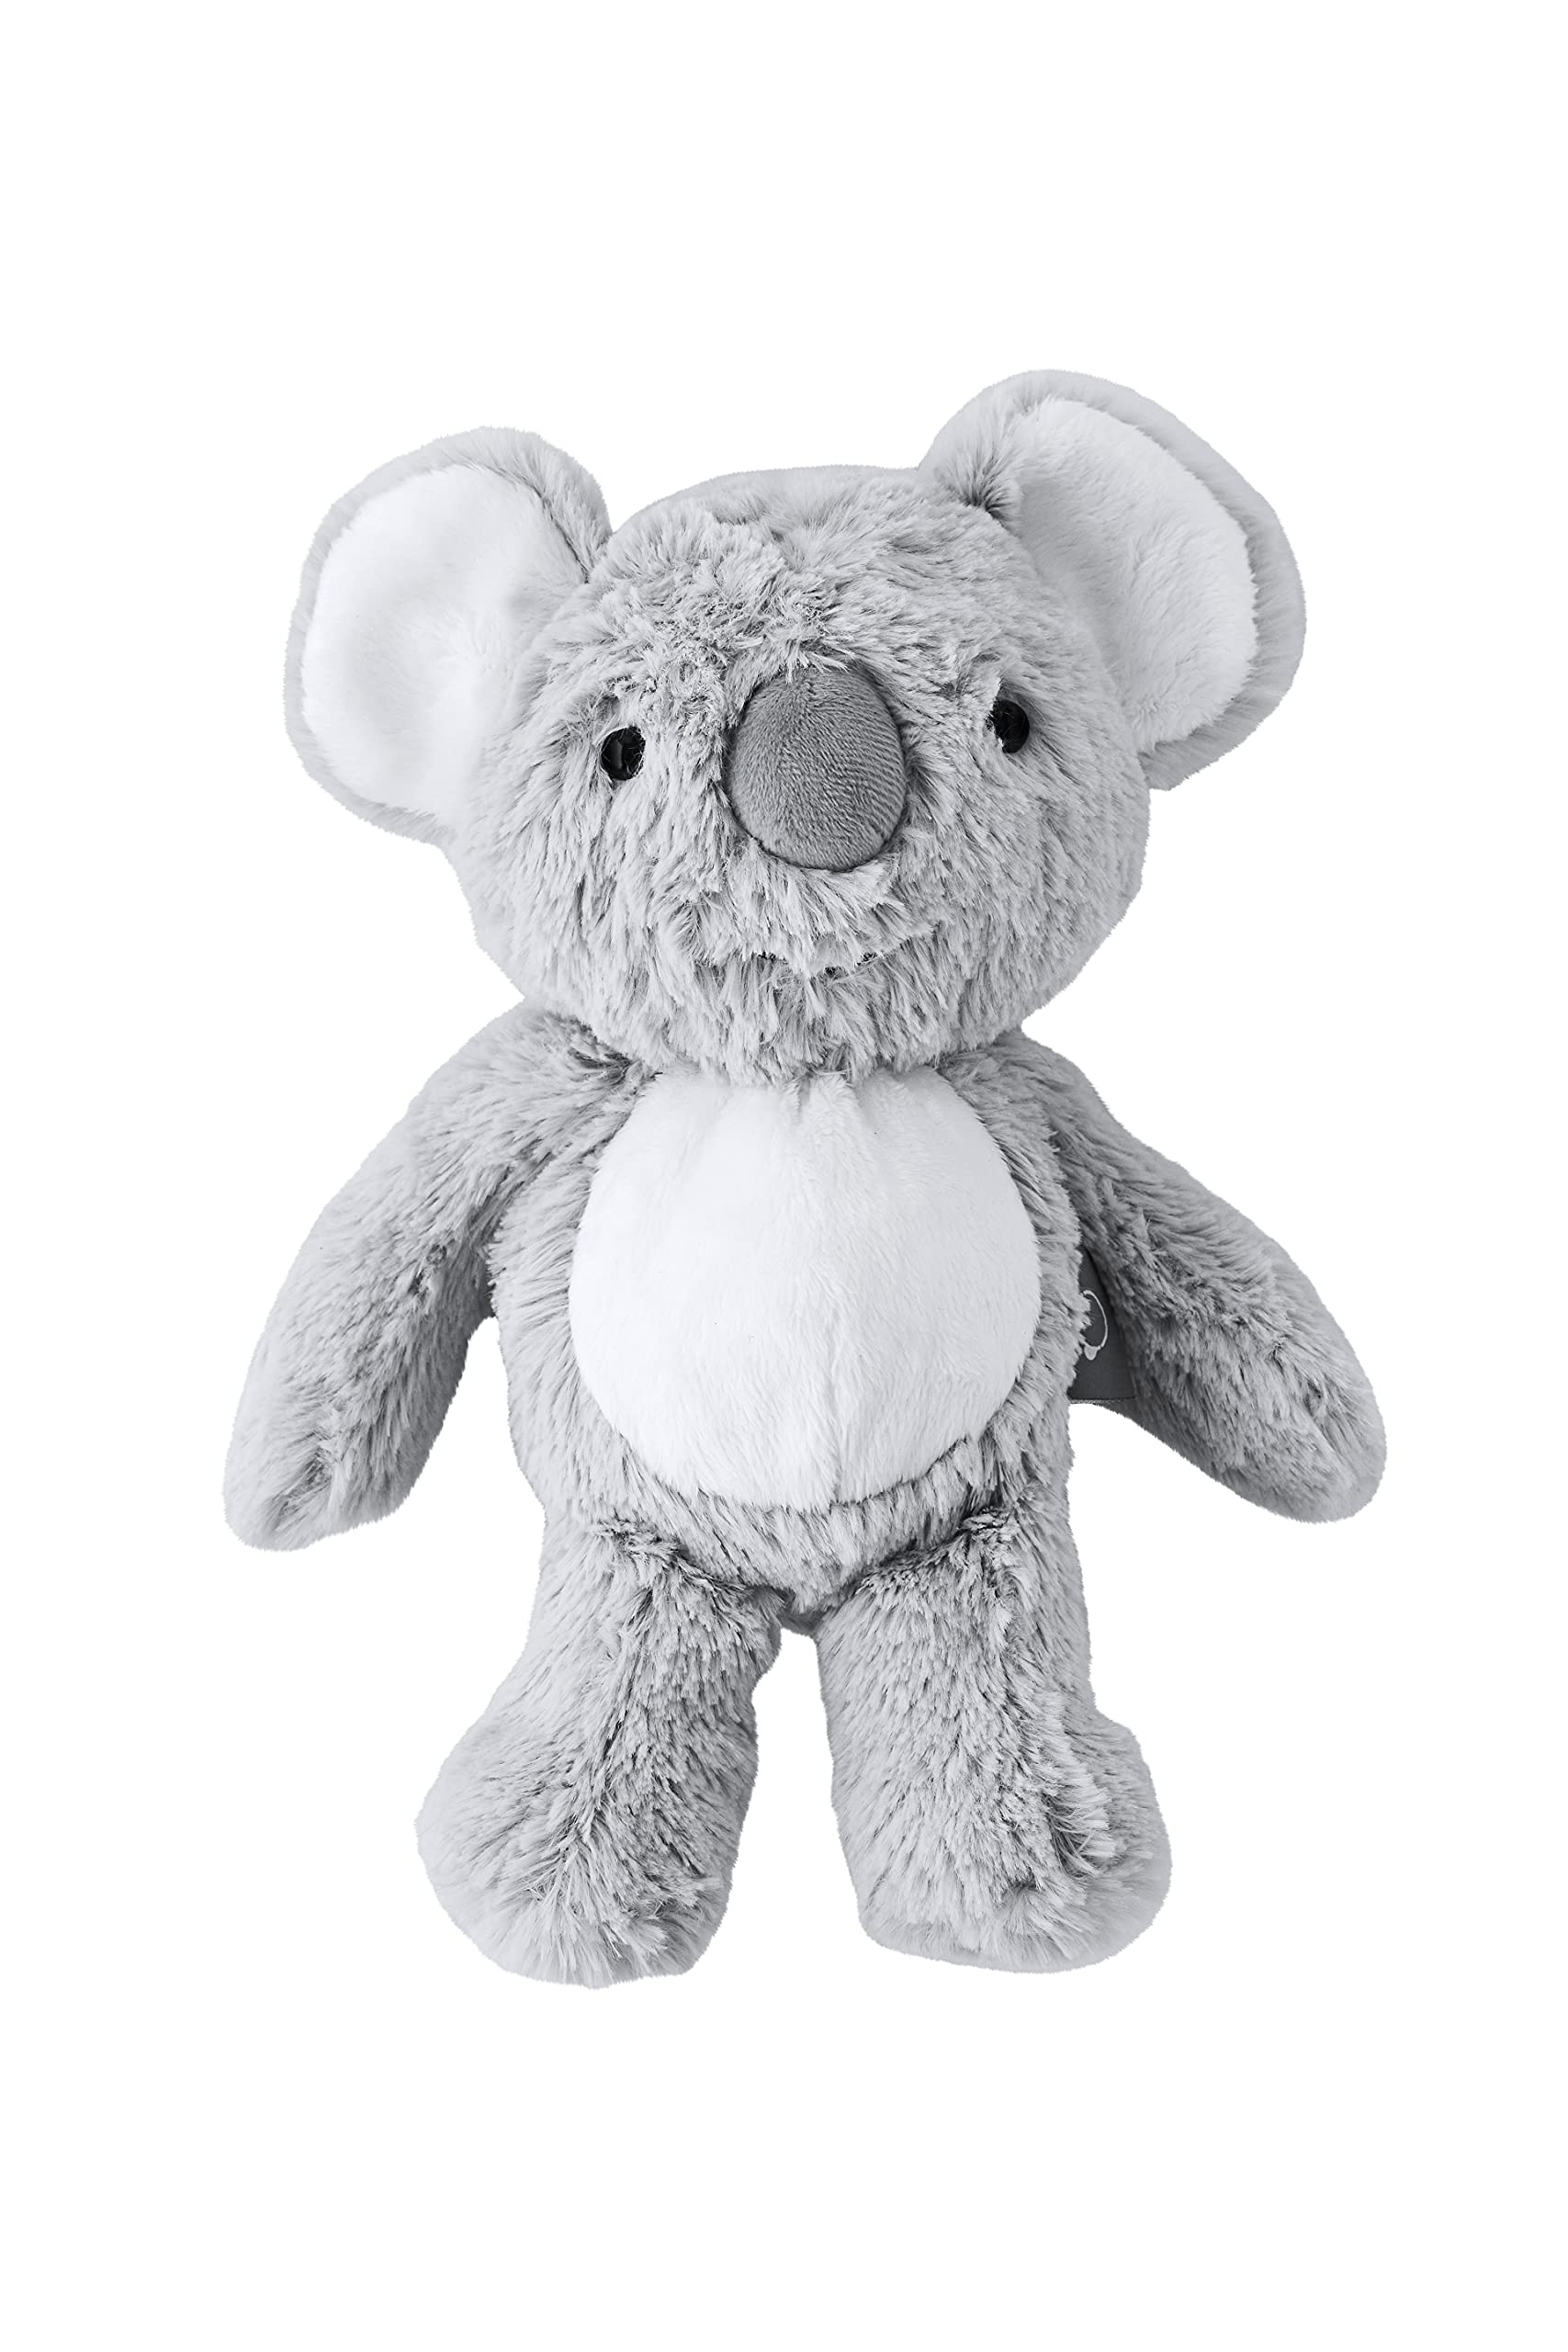 Design by Violet Koala Cuddles Plush Teddy,Grey,DBV-83-PLUSH